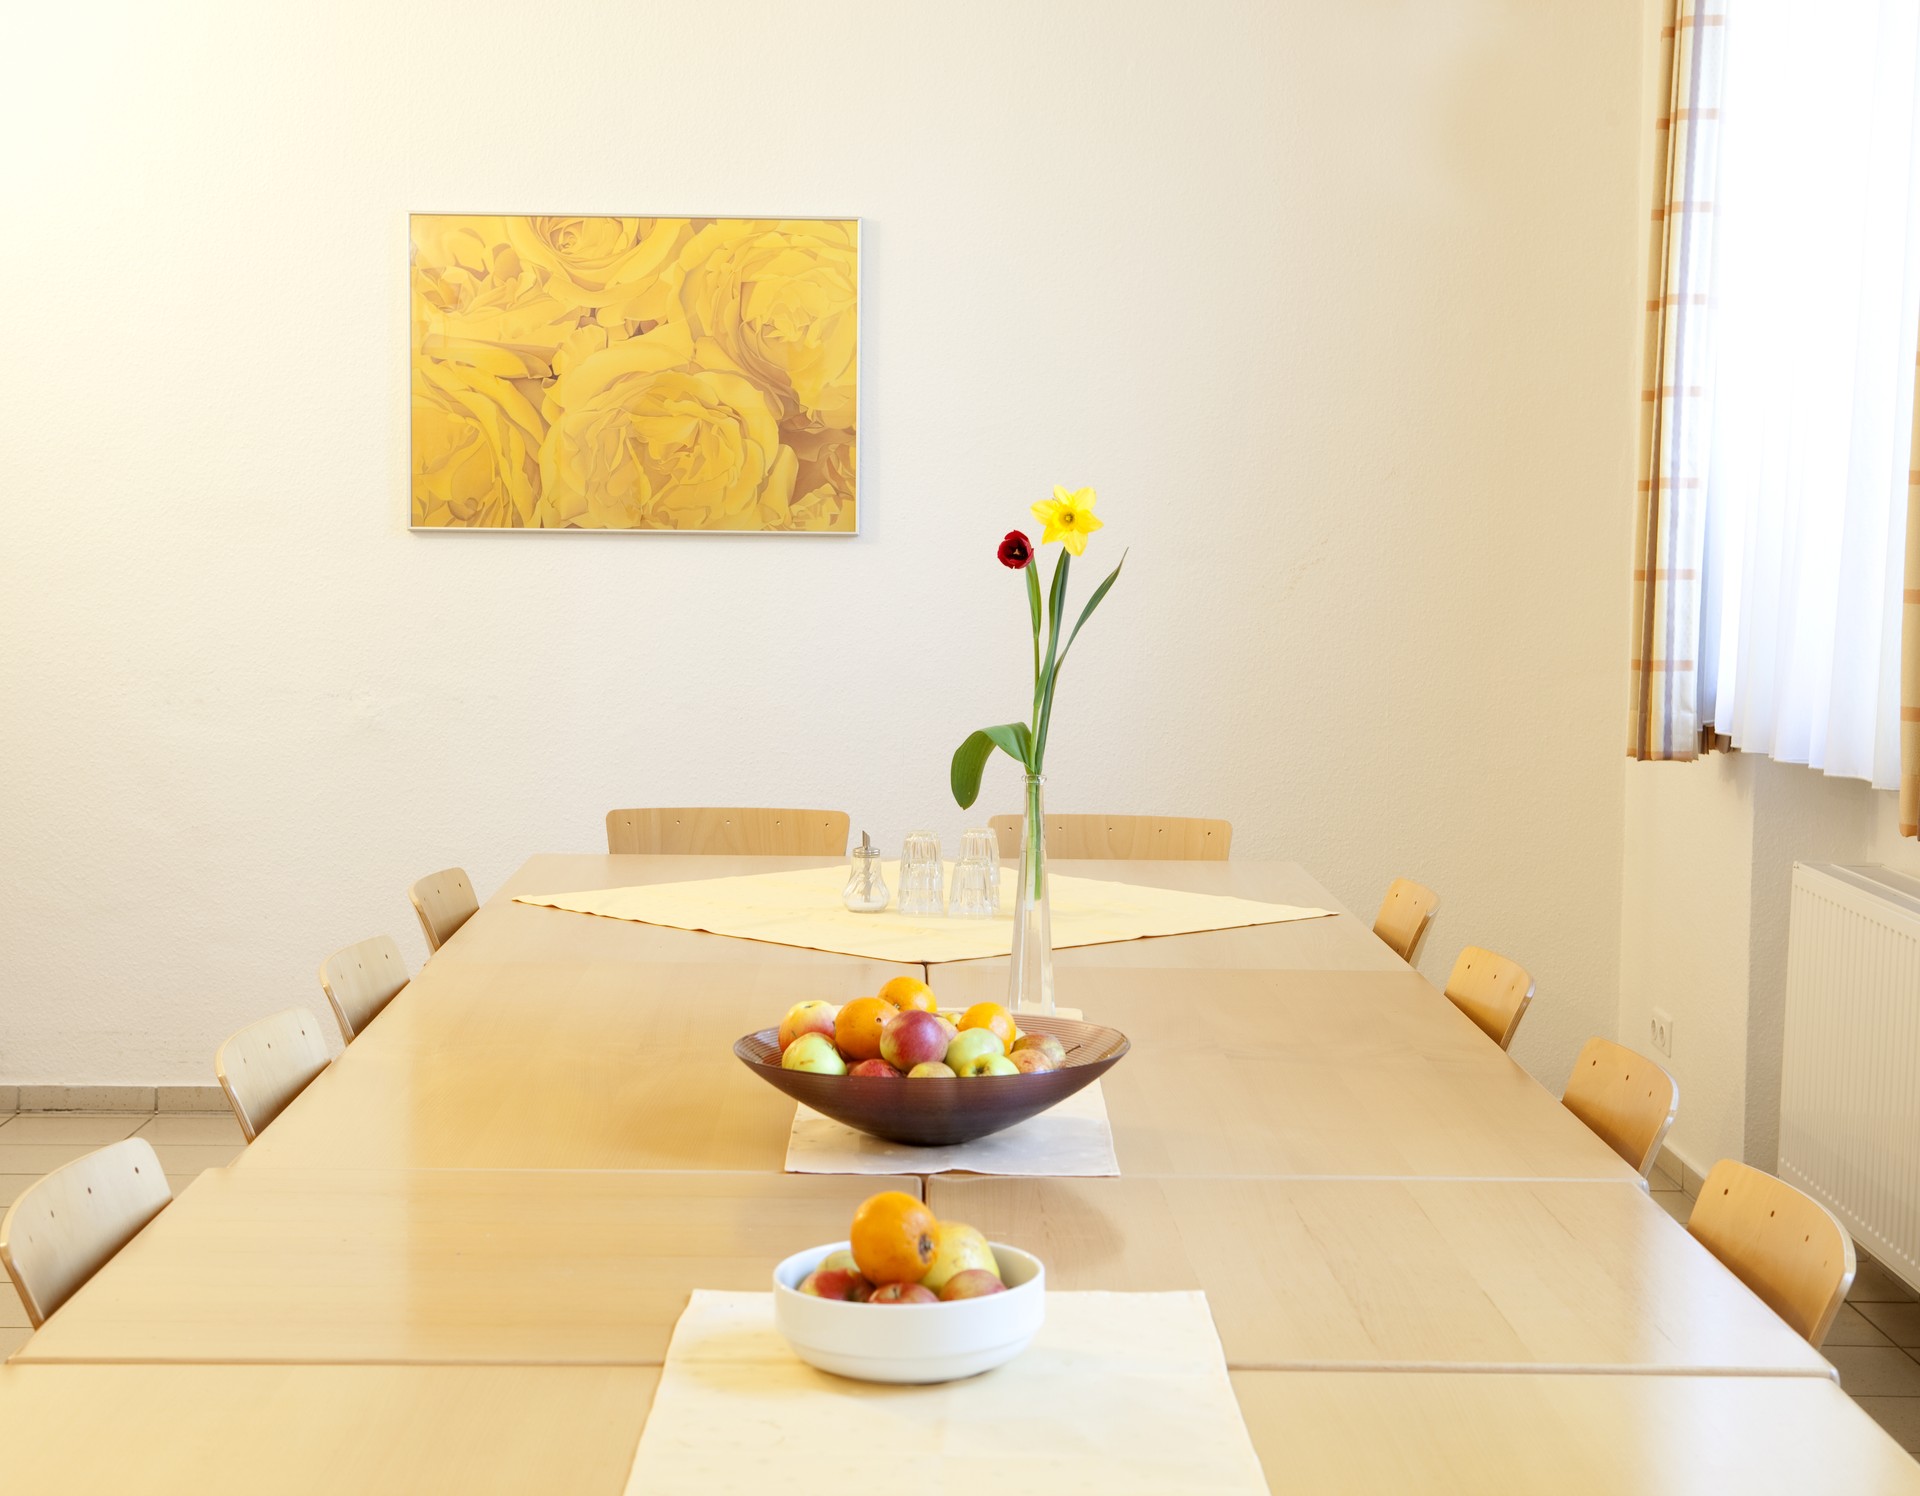 Ein heller Holztisch mit zehn Stühlen. Darauf stehen eine Vase mit zwei Frühlingsblumen und zwei Obstschalen. An der Wand hängt ein Bild